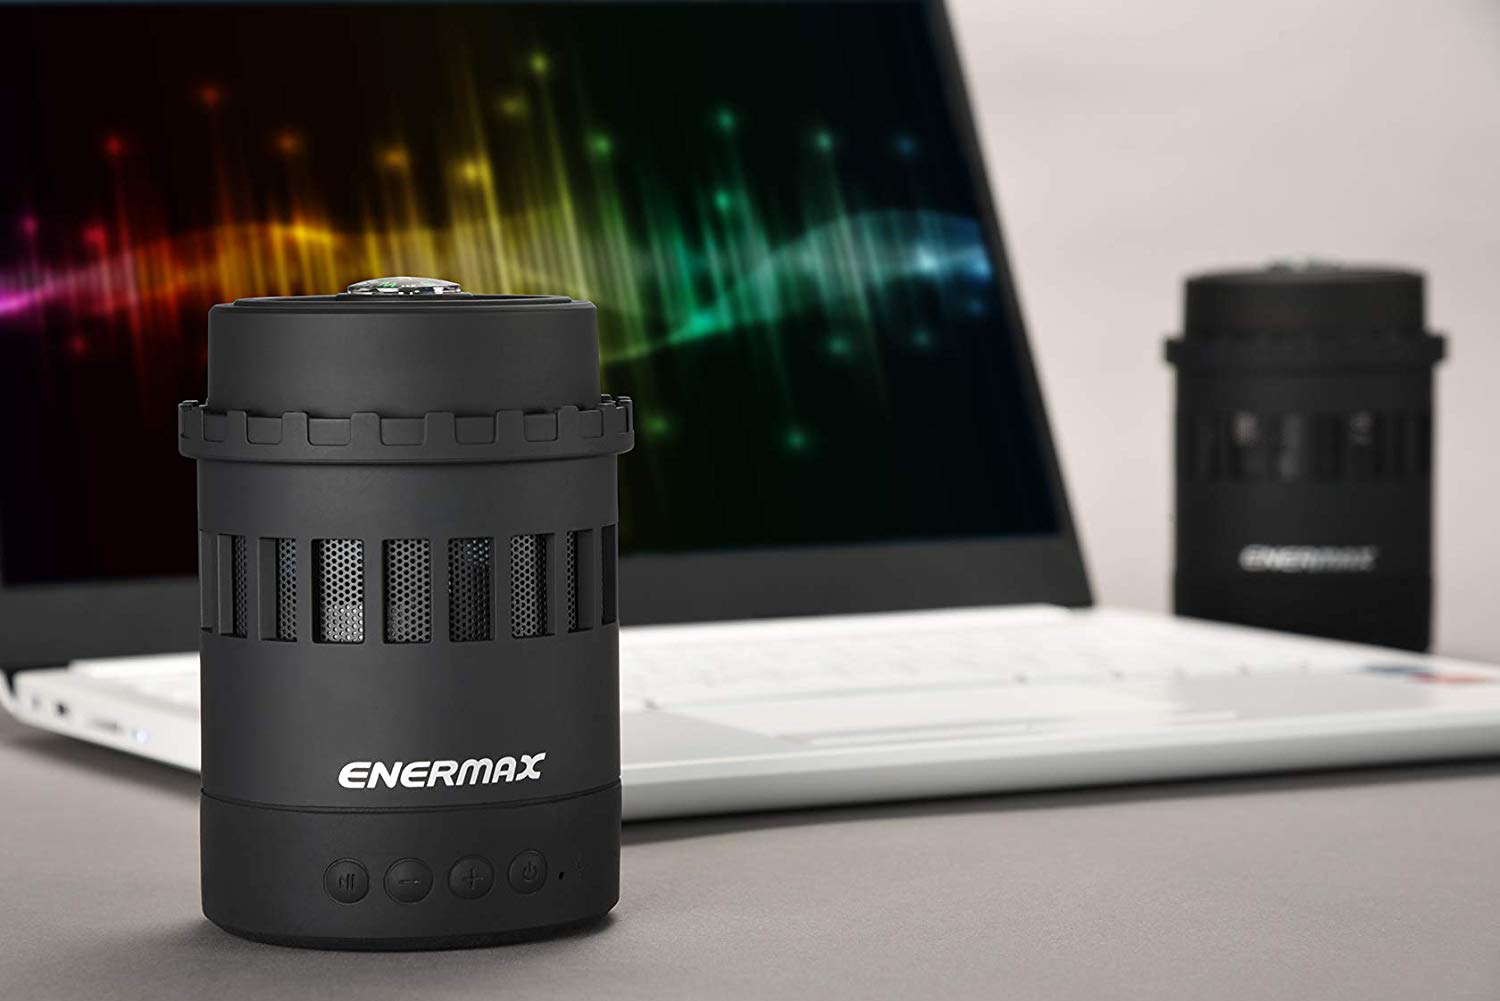 Enermax Pharosite 7-in-1 multi-functional LED Wireless Speaker